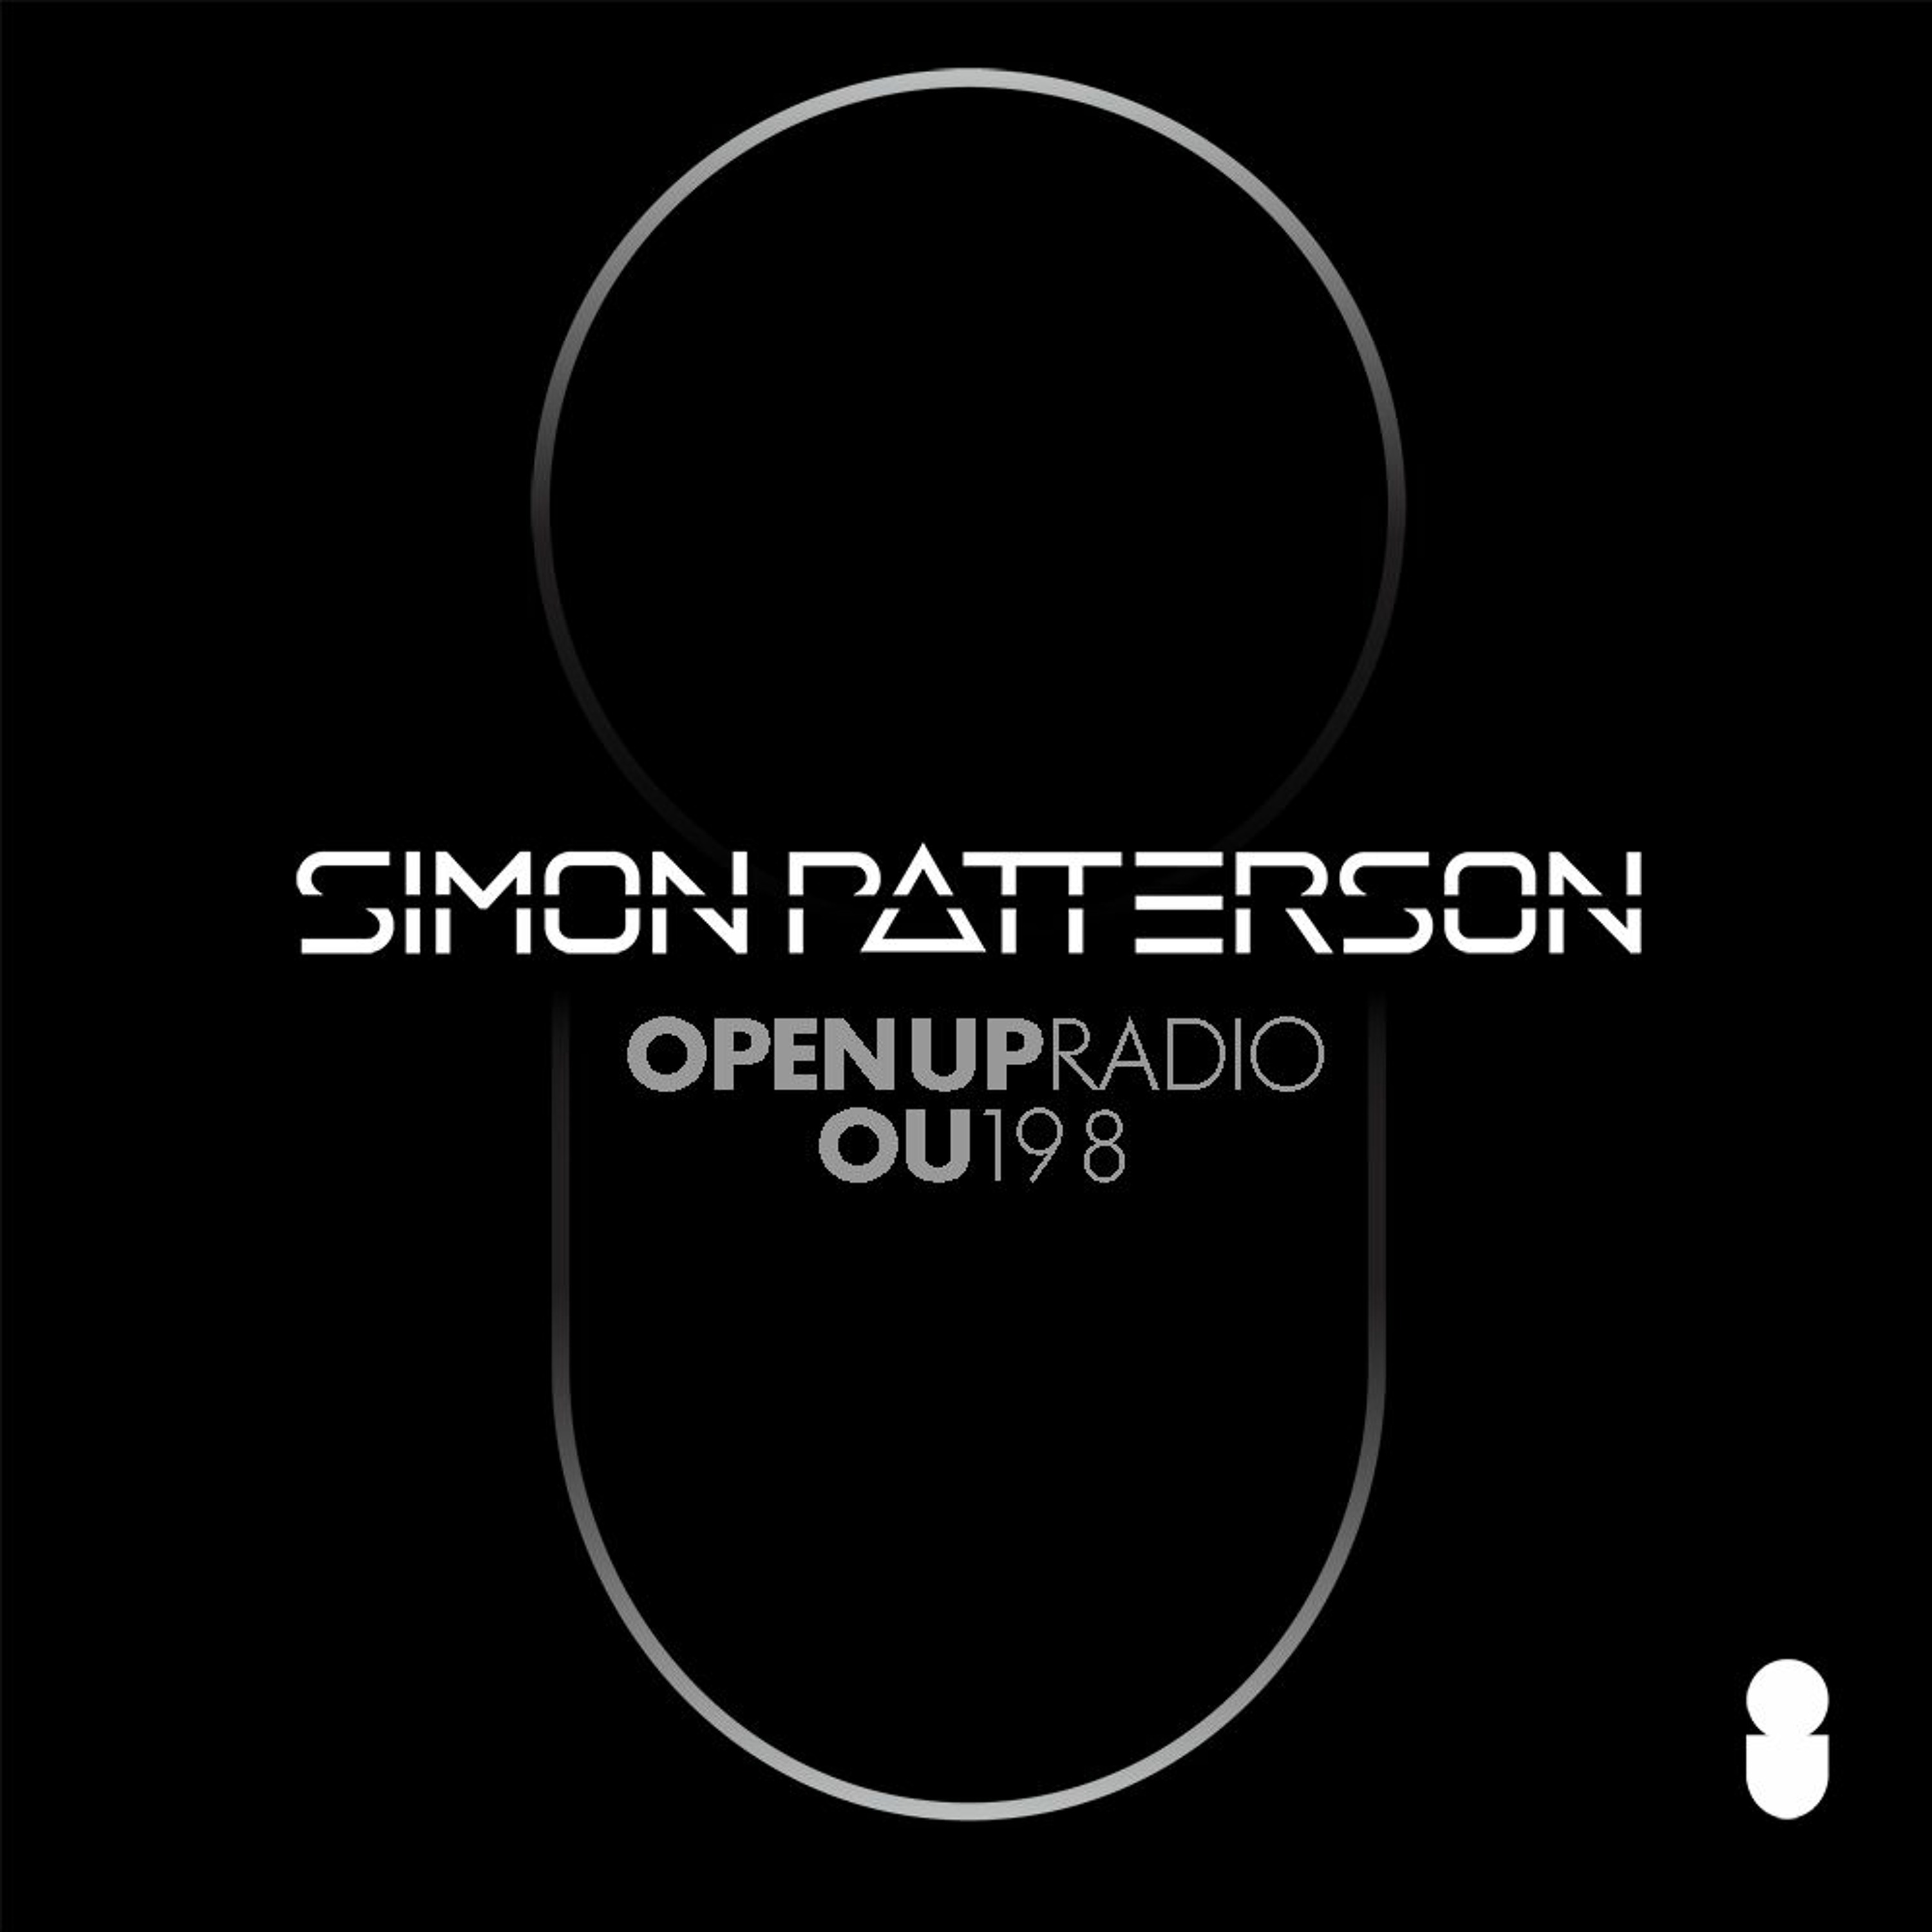 Simon Patterson - Open Up - 198